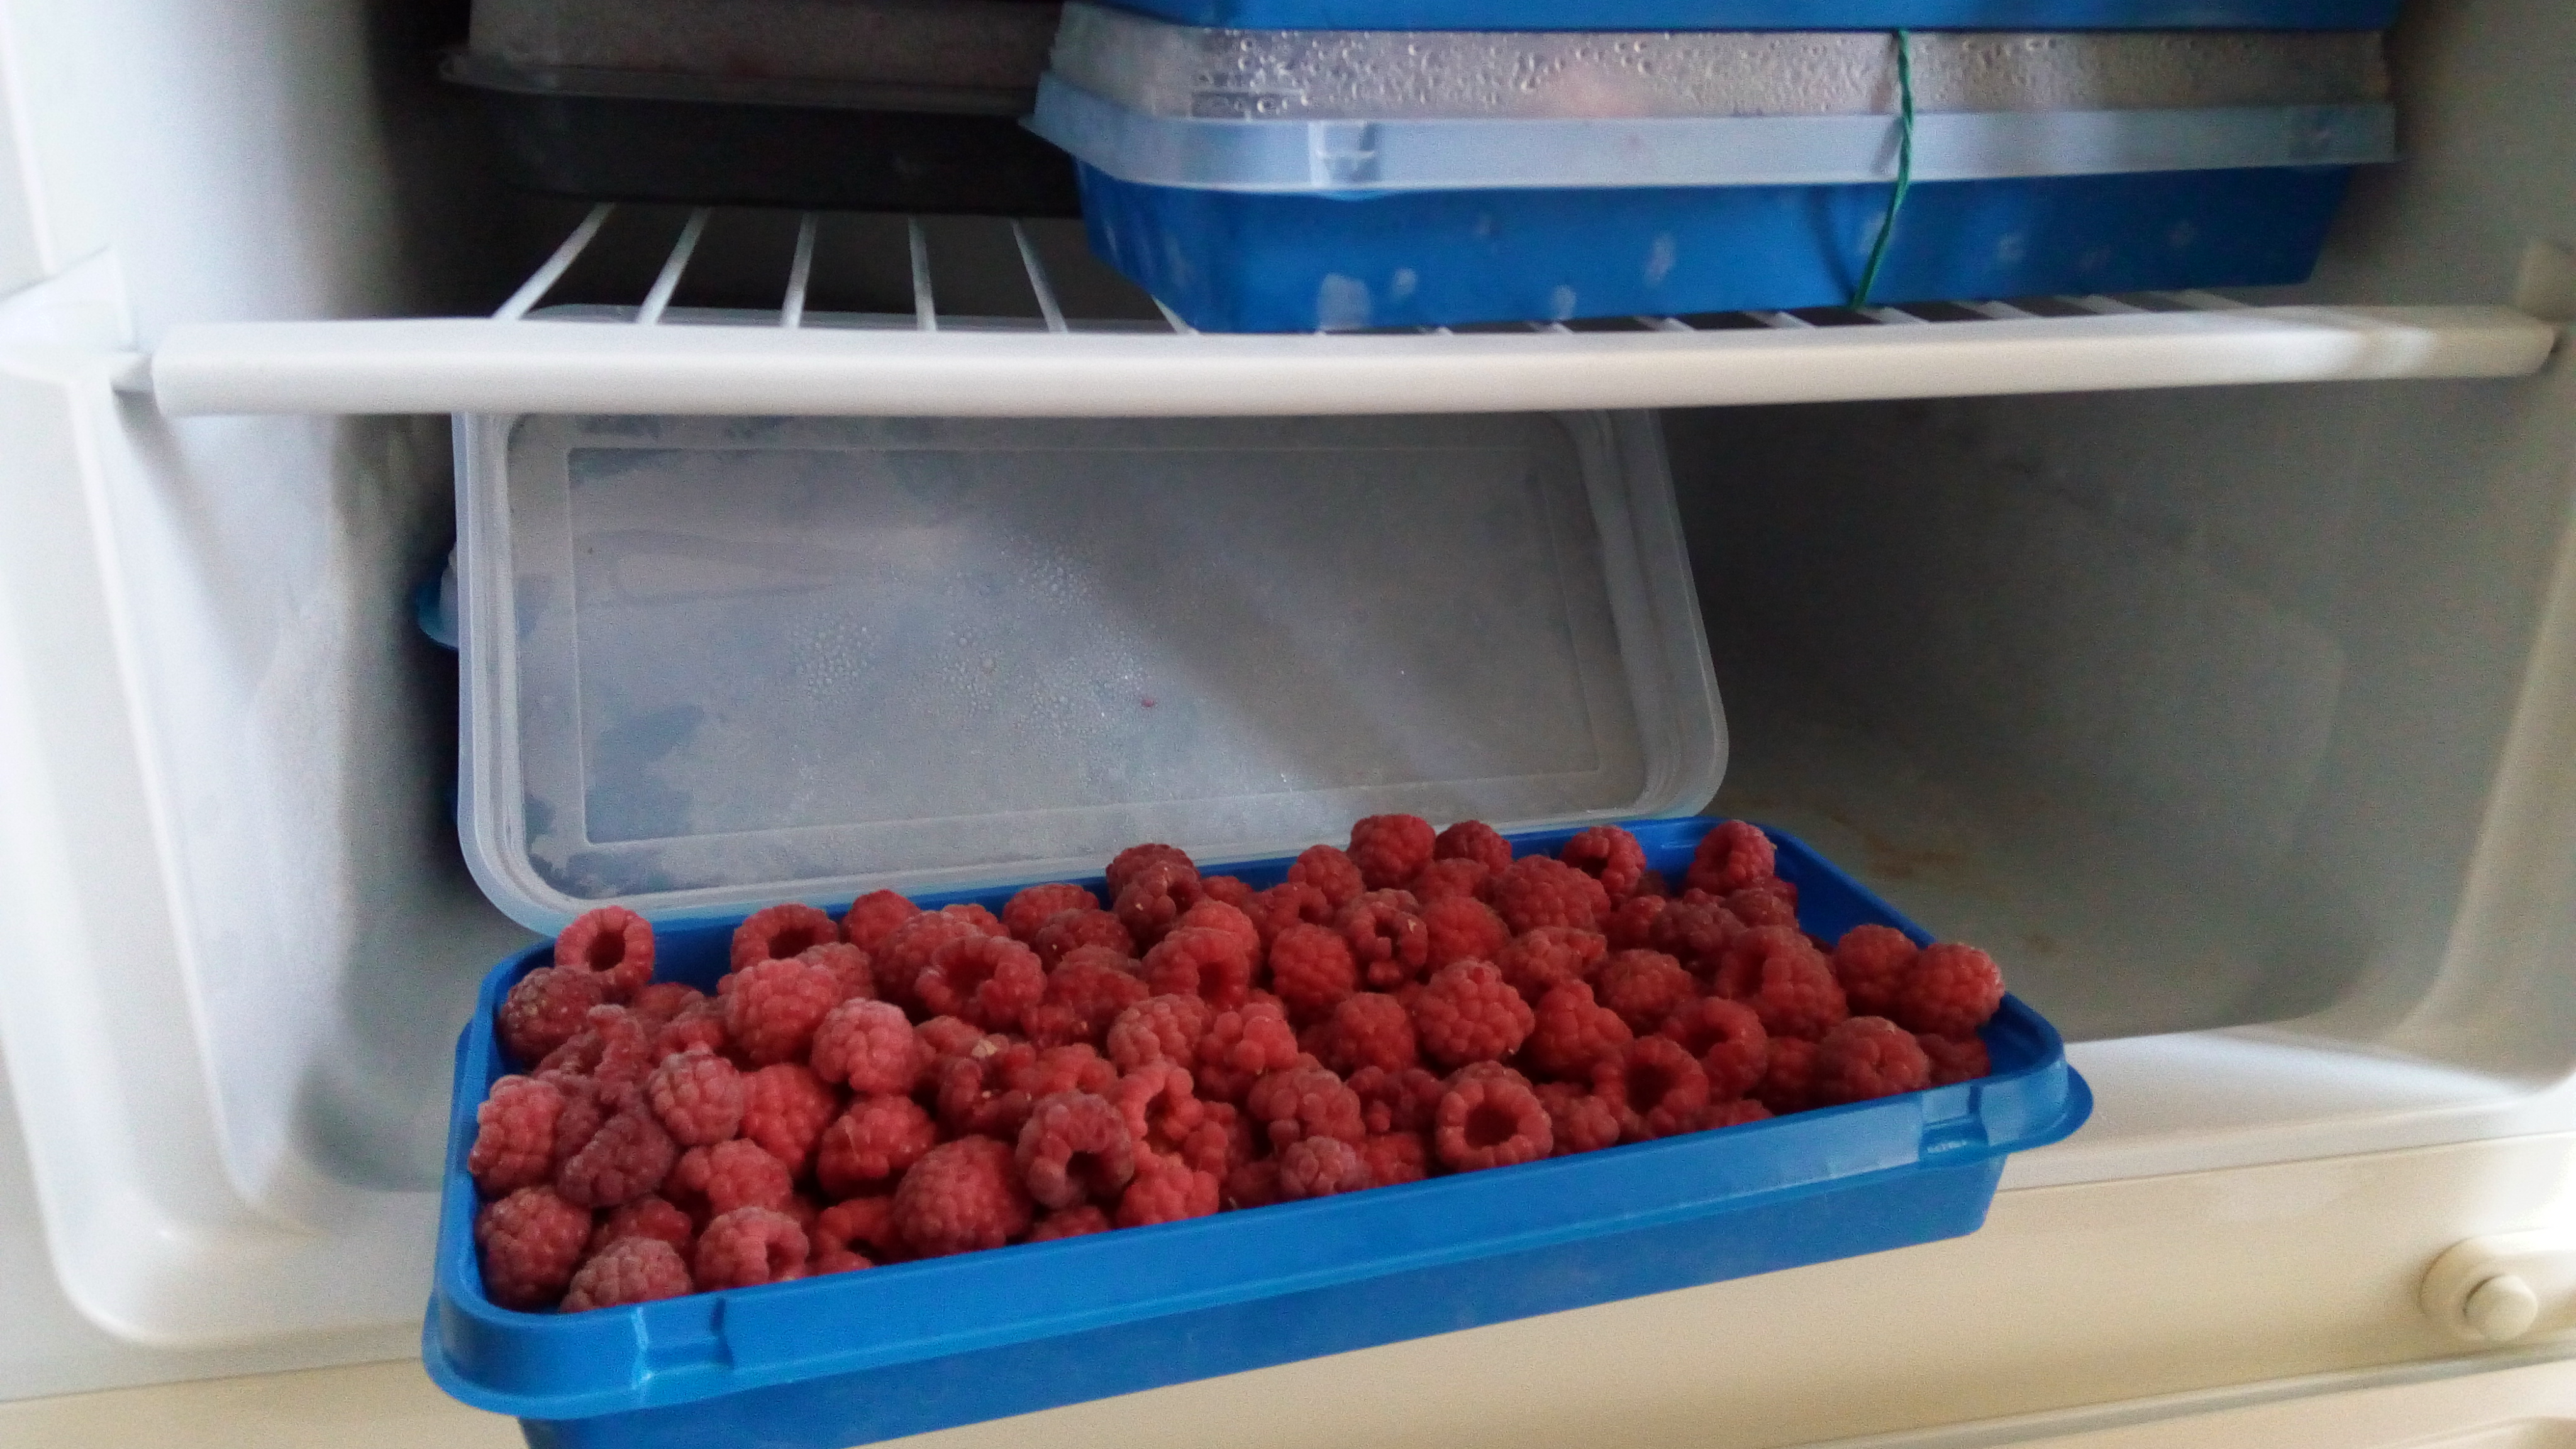 Как заморозить малину на зиму целыми ягодами, молотую и в сахаре